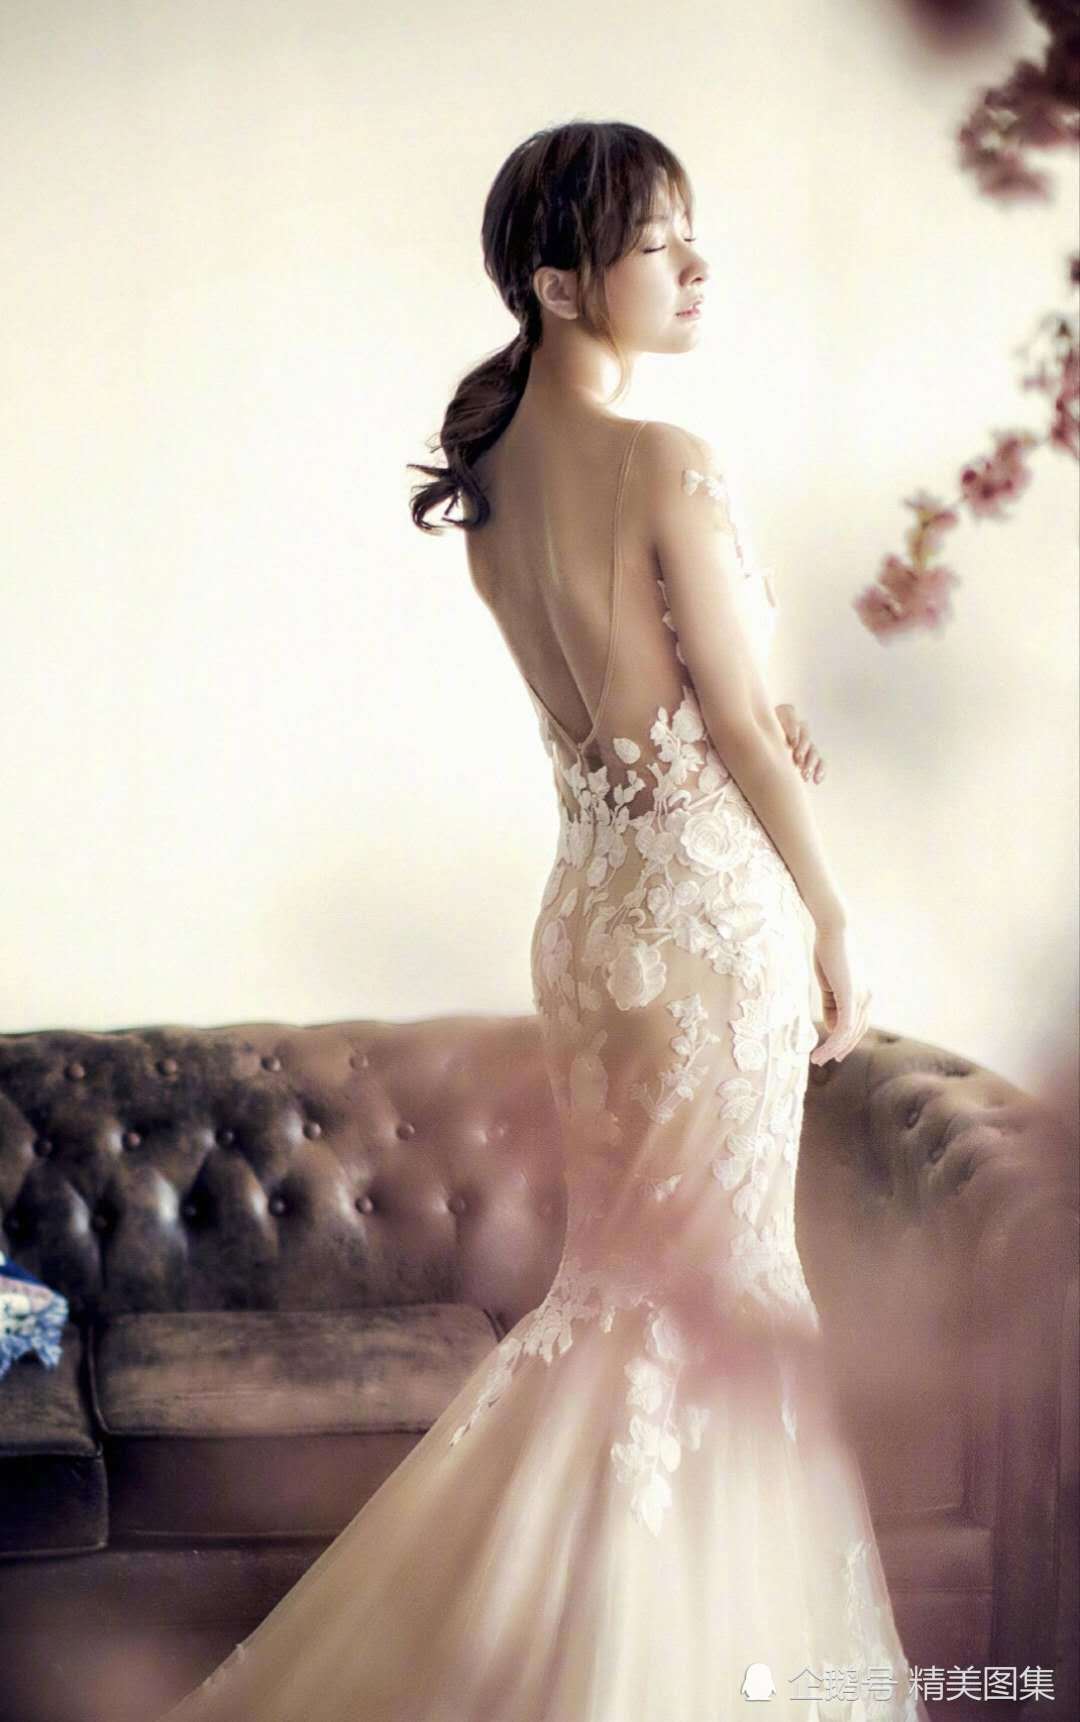 吴昕身穿白色蕾丝婚纱装,化身美丽新娘,美若天仙